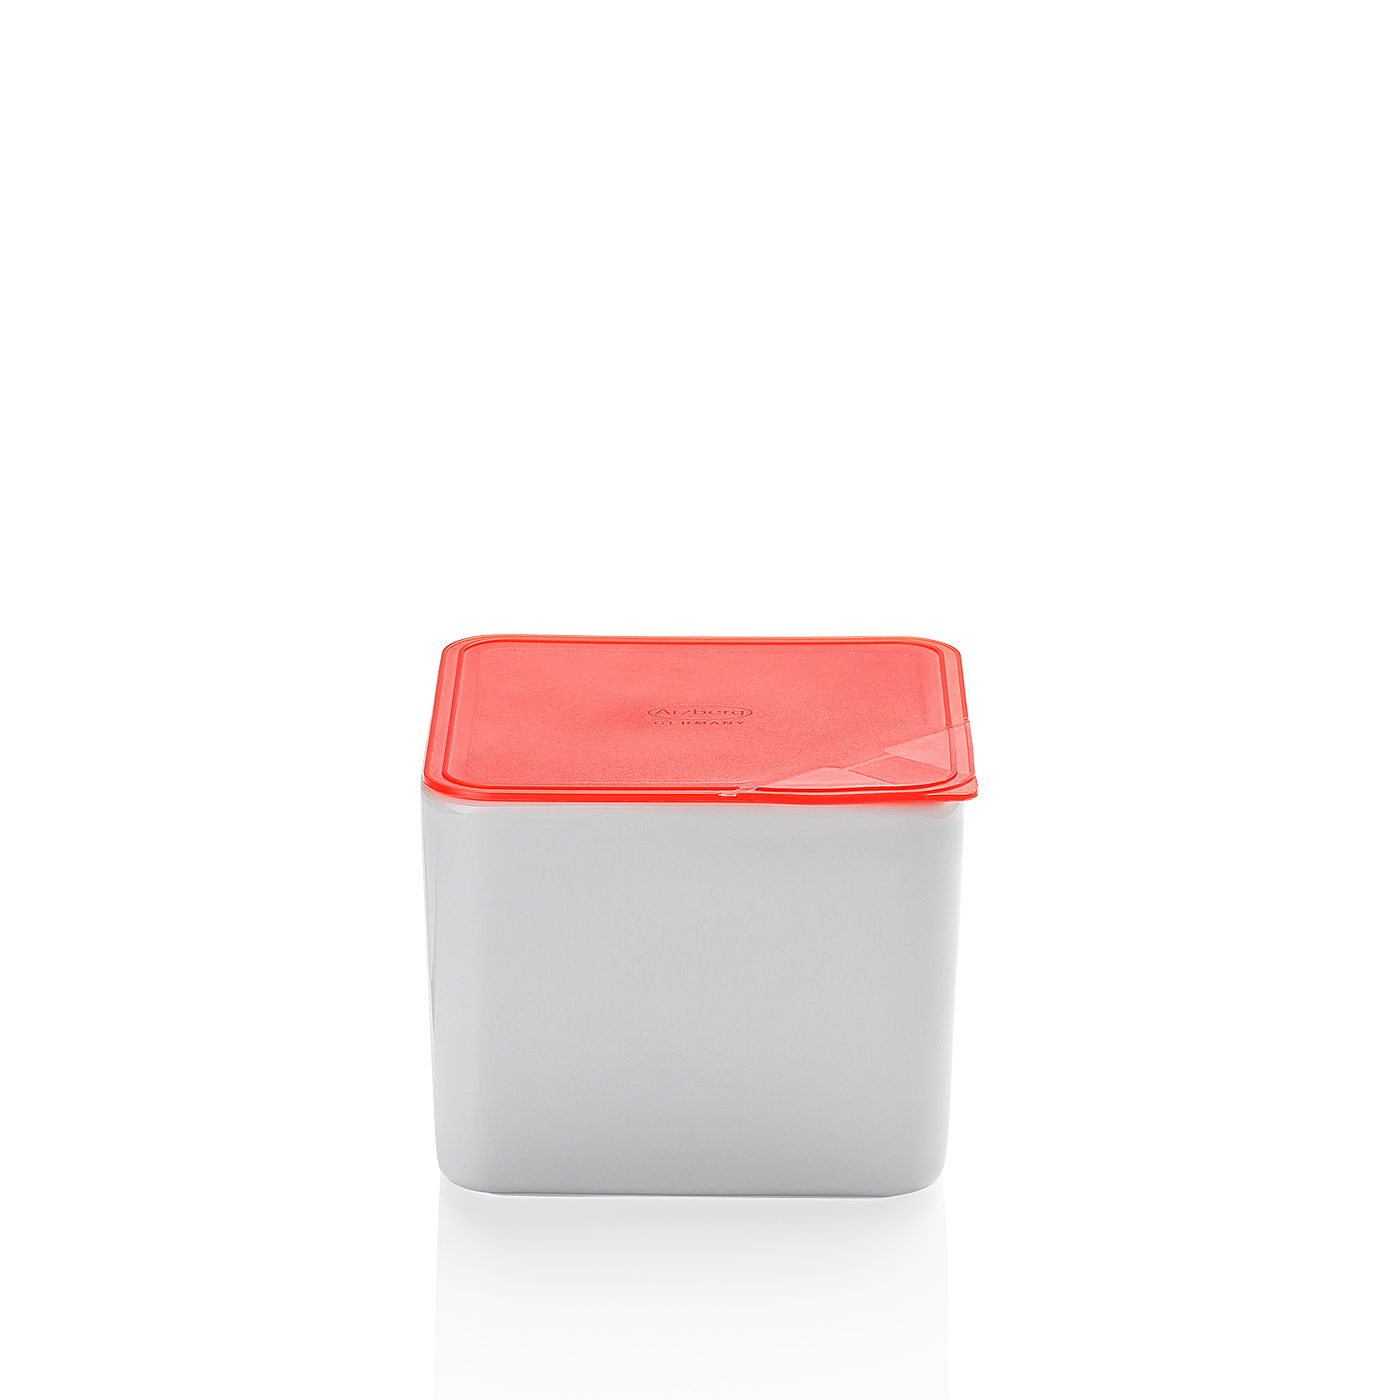 Frischebox 15x15 hoch Küchenfreunde Kunststoff rot Arzberg